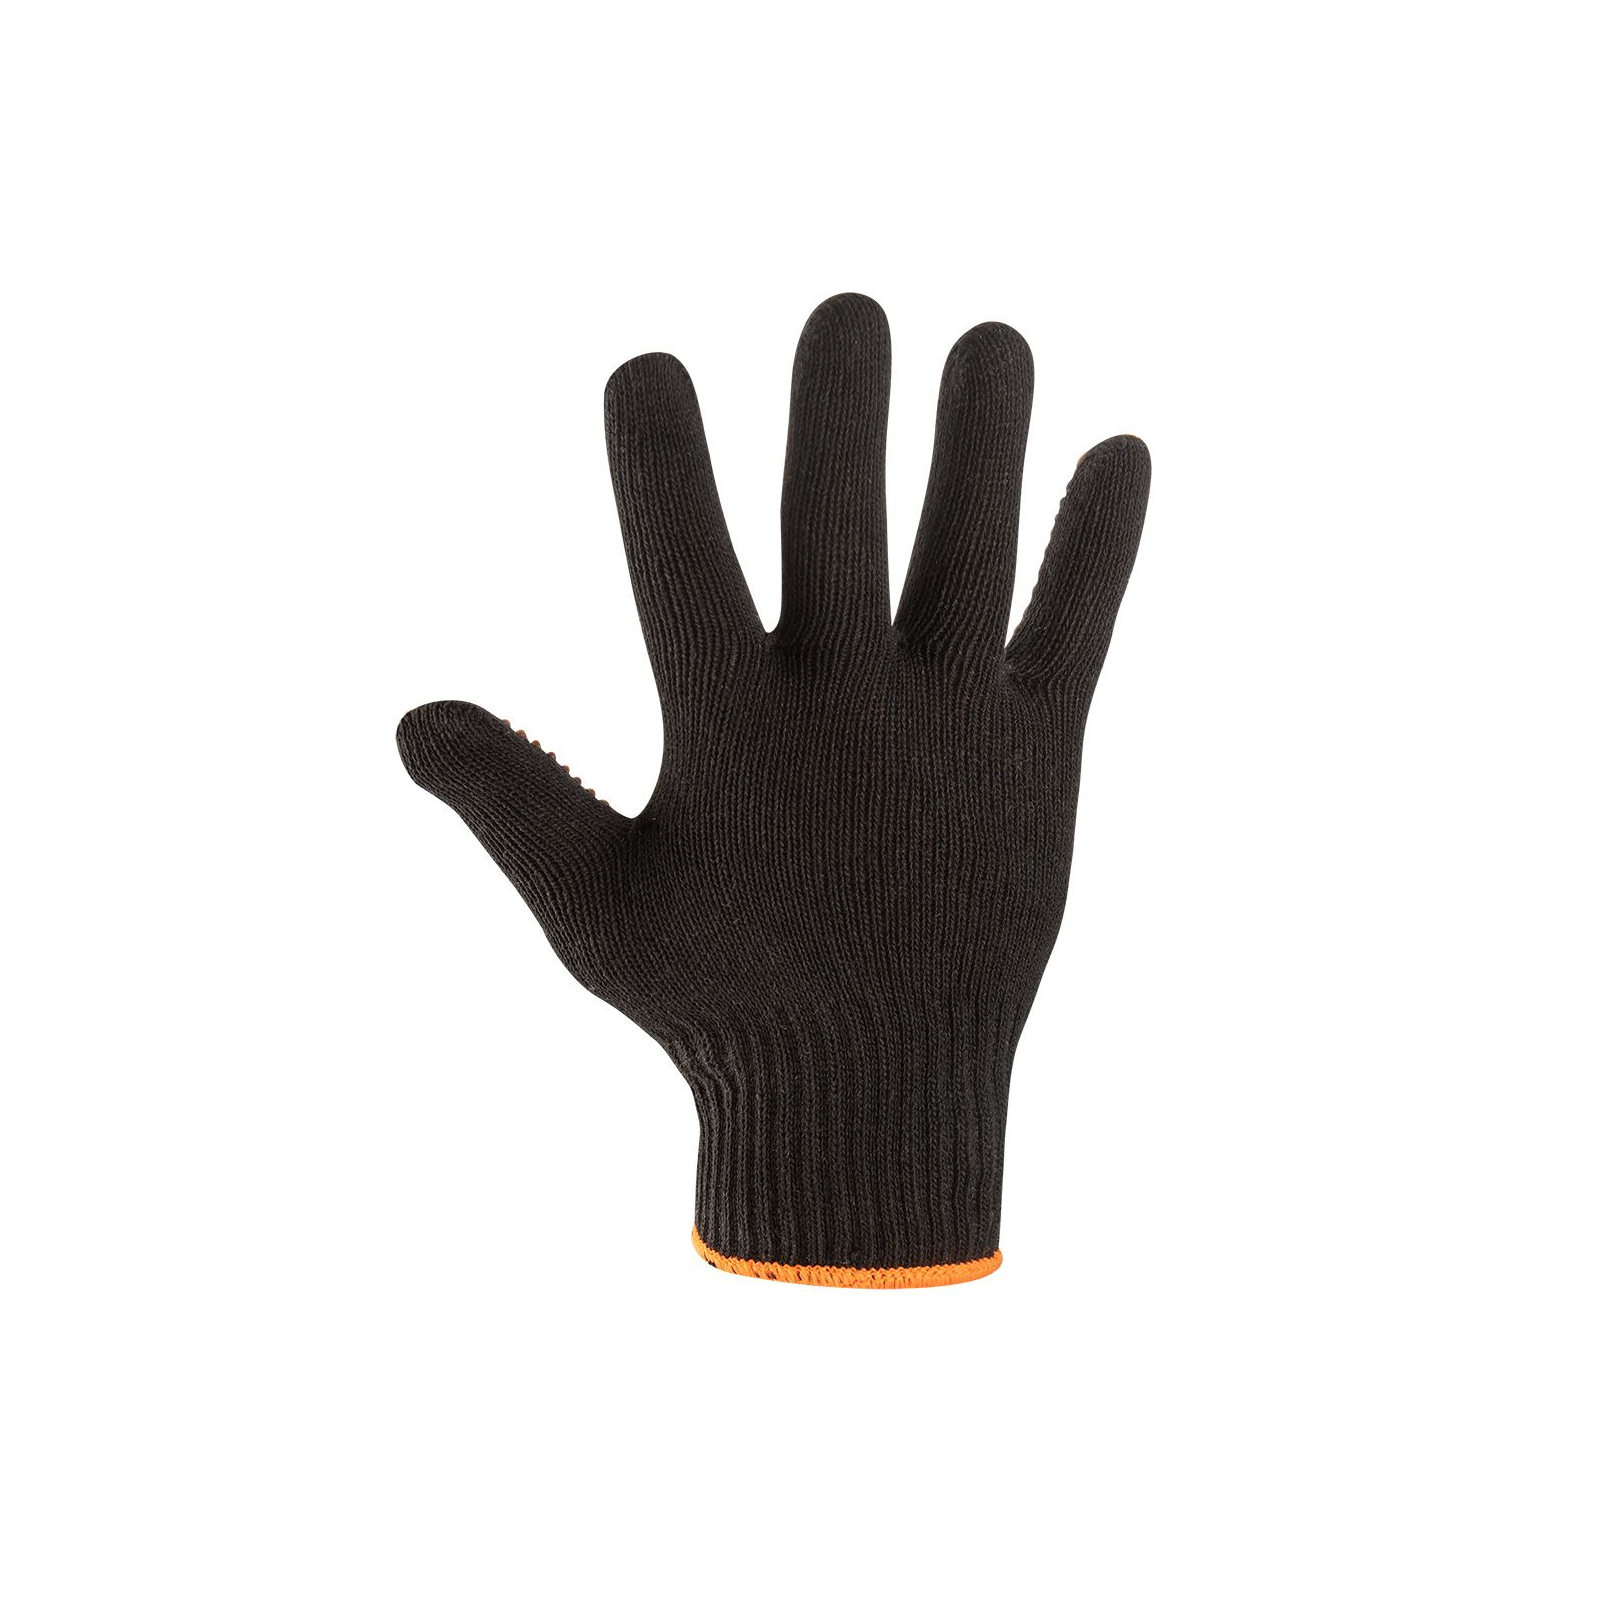 Защитные перчатки Neo Tools хлопок и полиэстер, пунктир, р. (97-620-9) изображение 3